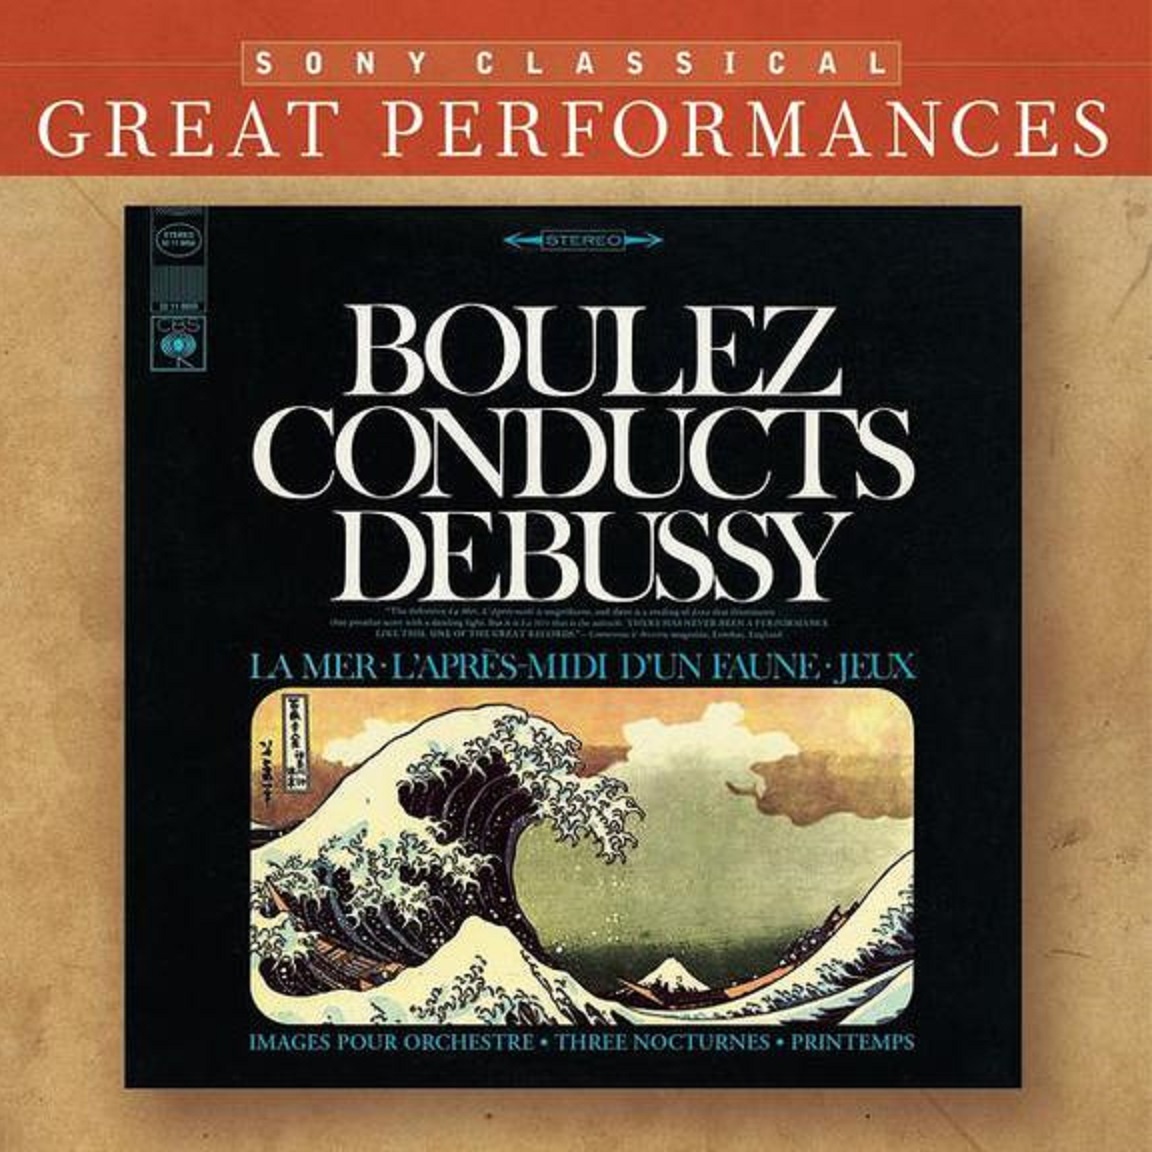 Debussy: Orchestral Works La Mer Nocturnes Pintemps Jeux Images Pre lude a l' apre smidi d' un faune Great Performances